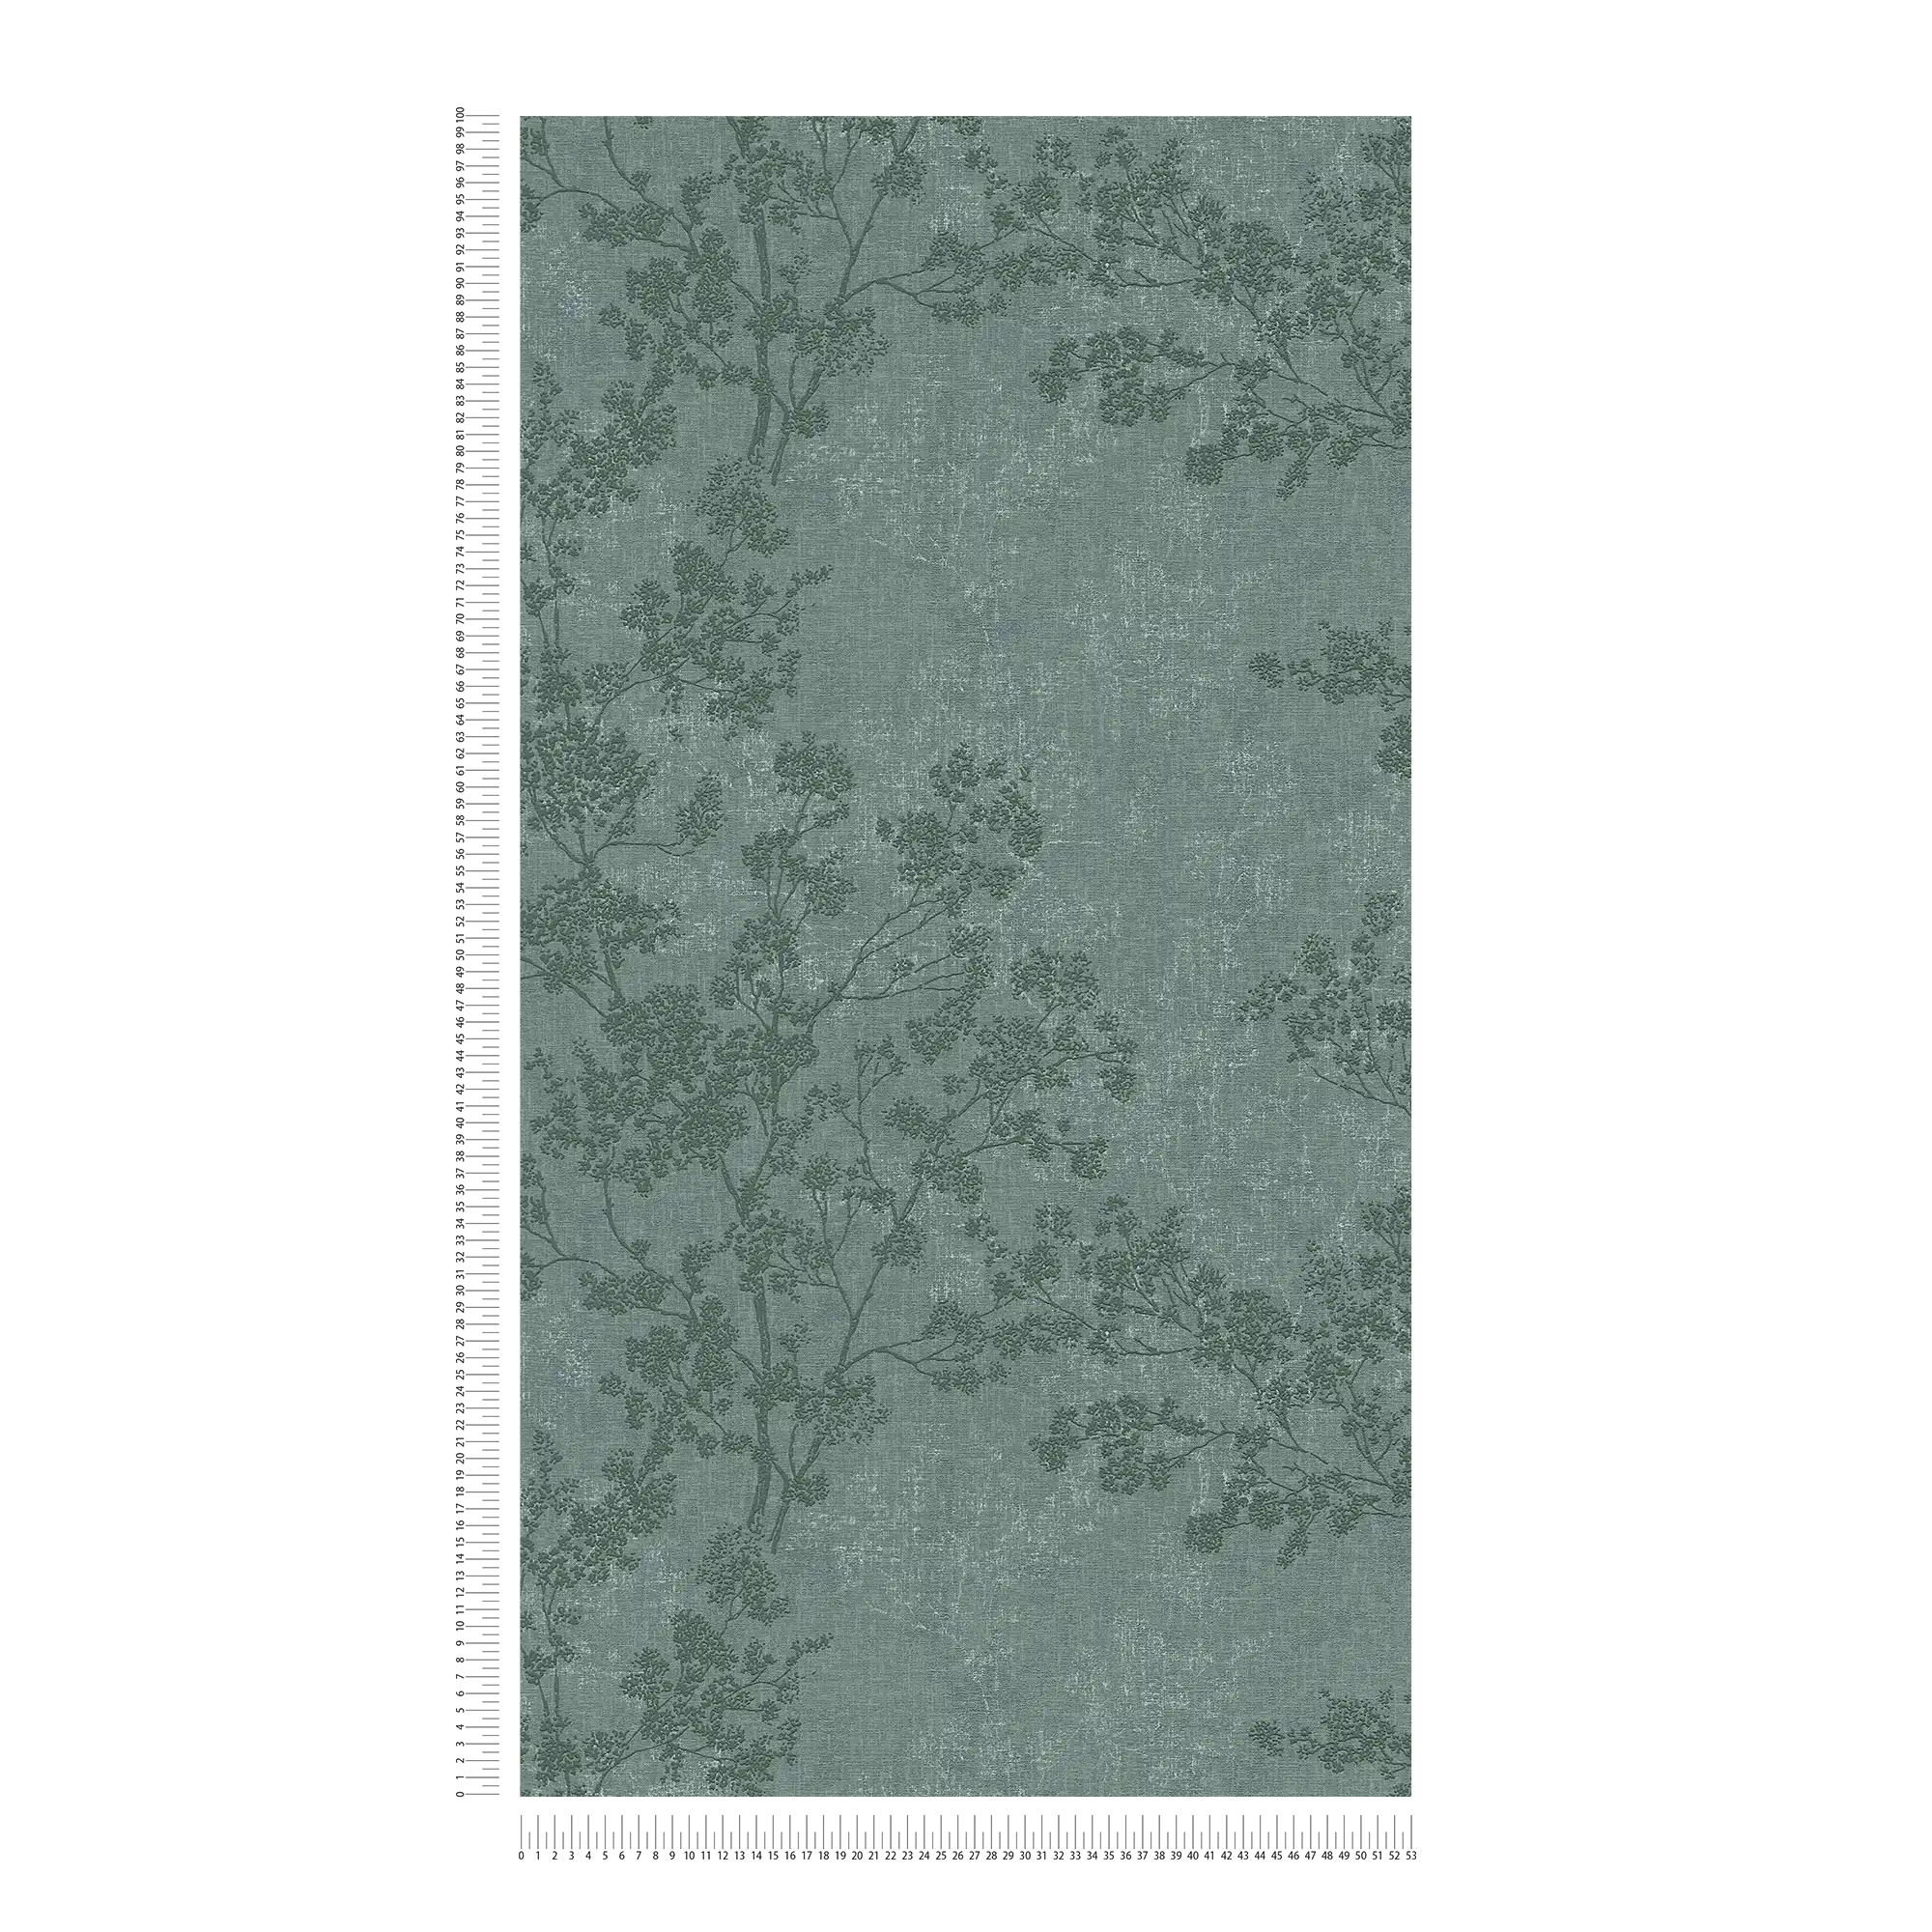             wallpaper leaves pattern in linen look - green
        